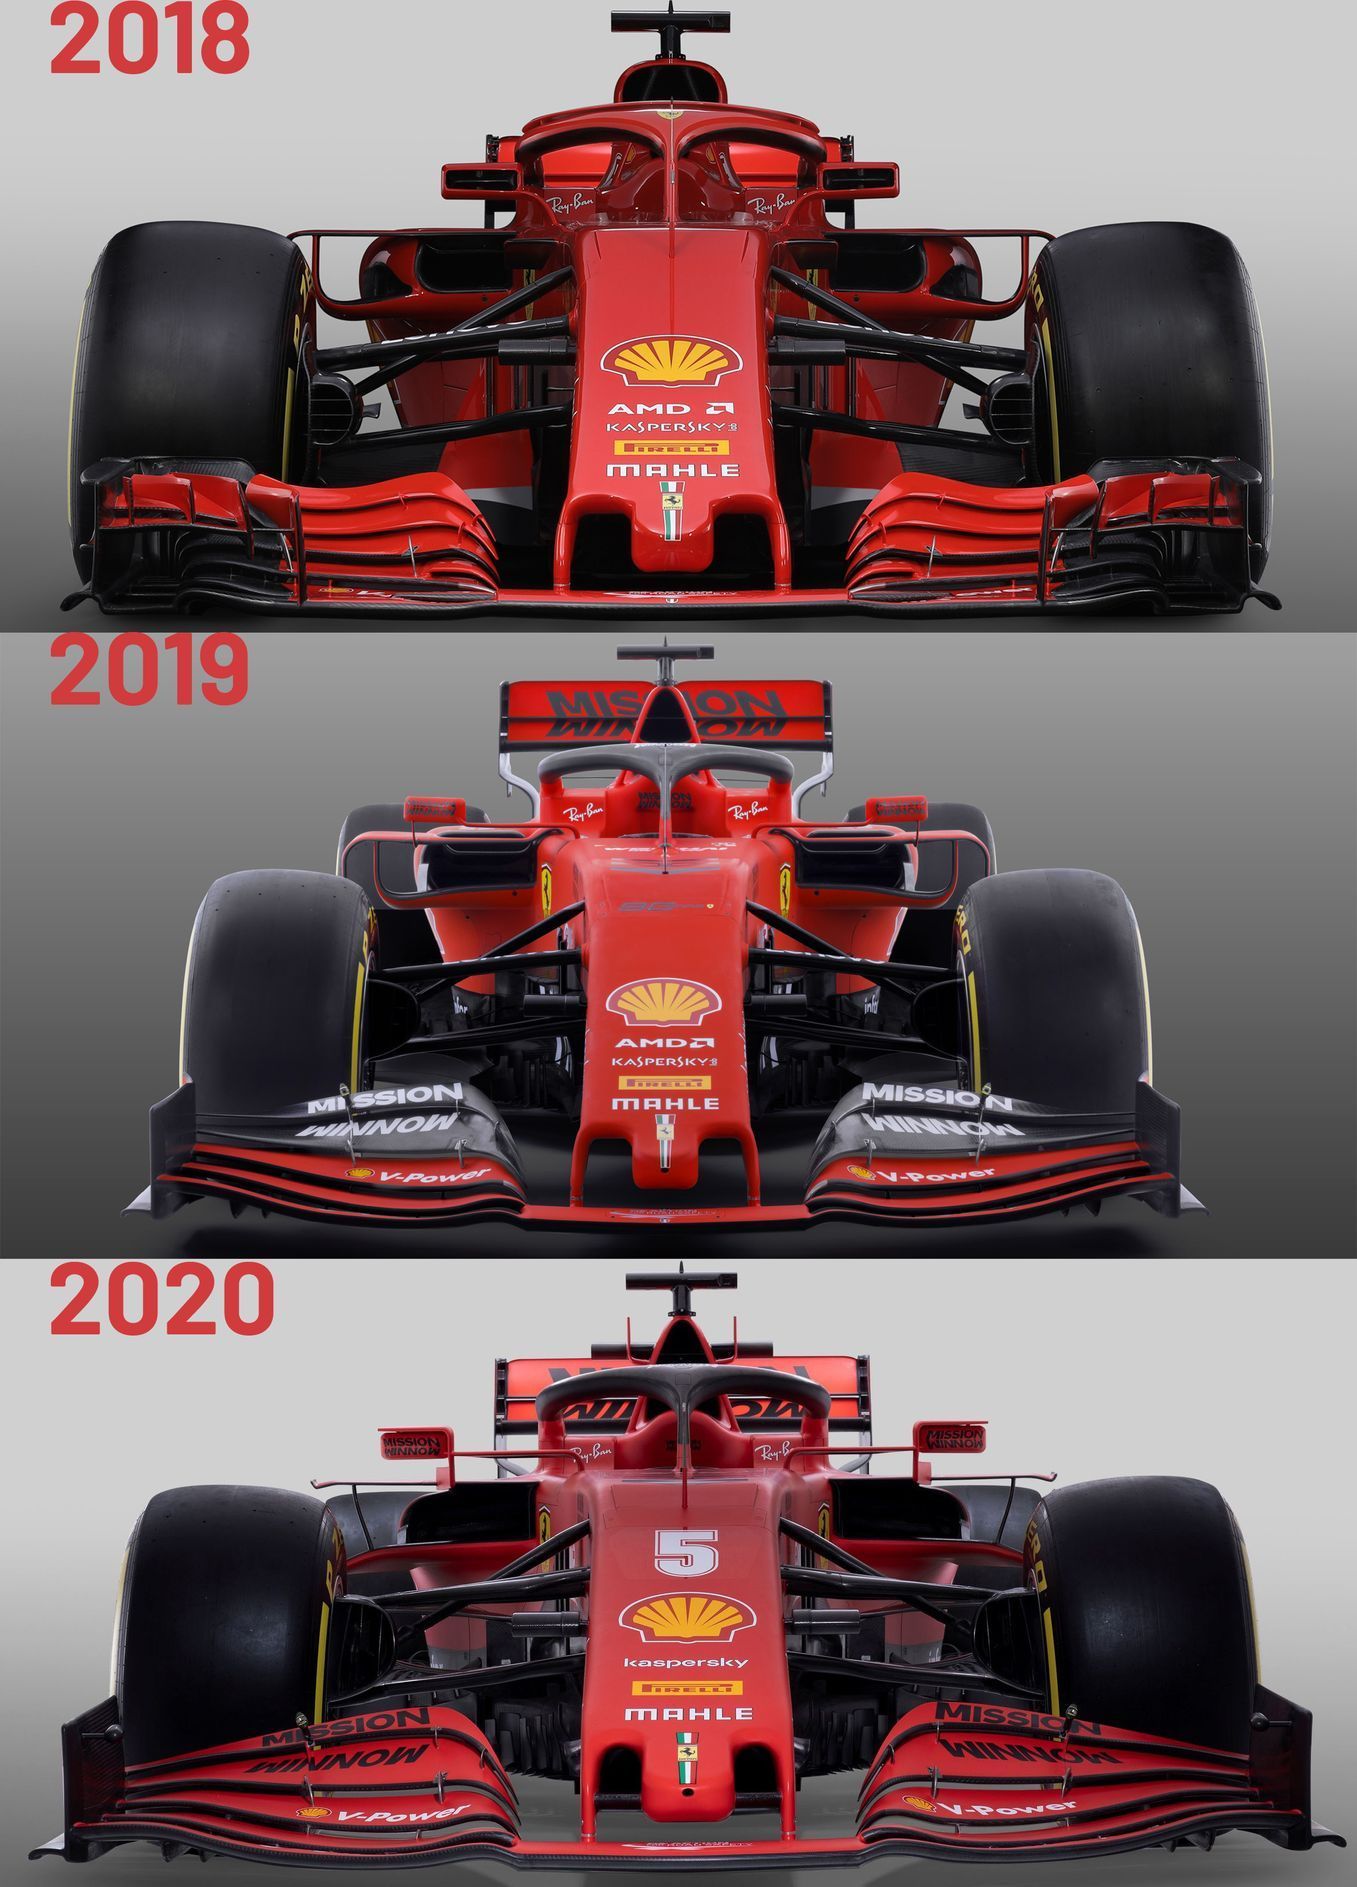 Porovnání monopostů Ferrari pro sezony 2018 až 2020